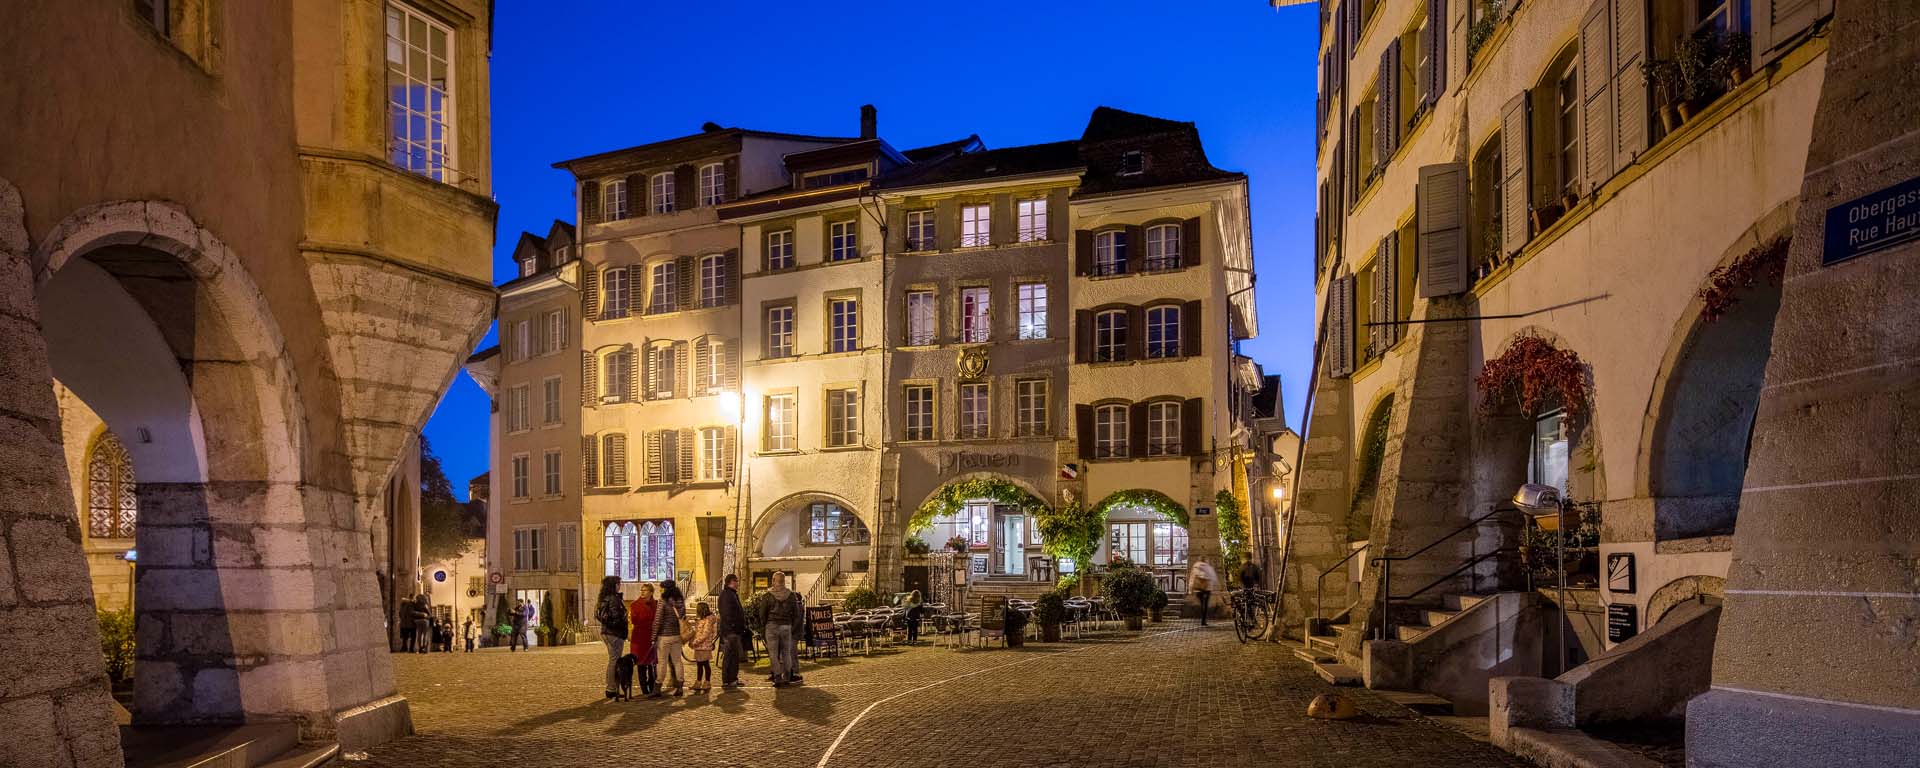 Der Ring in der Bieler Altstadt - vieille ville de Bienne